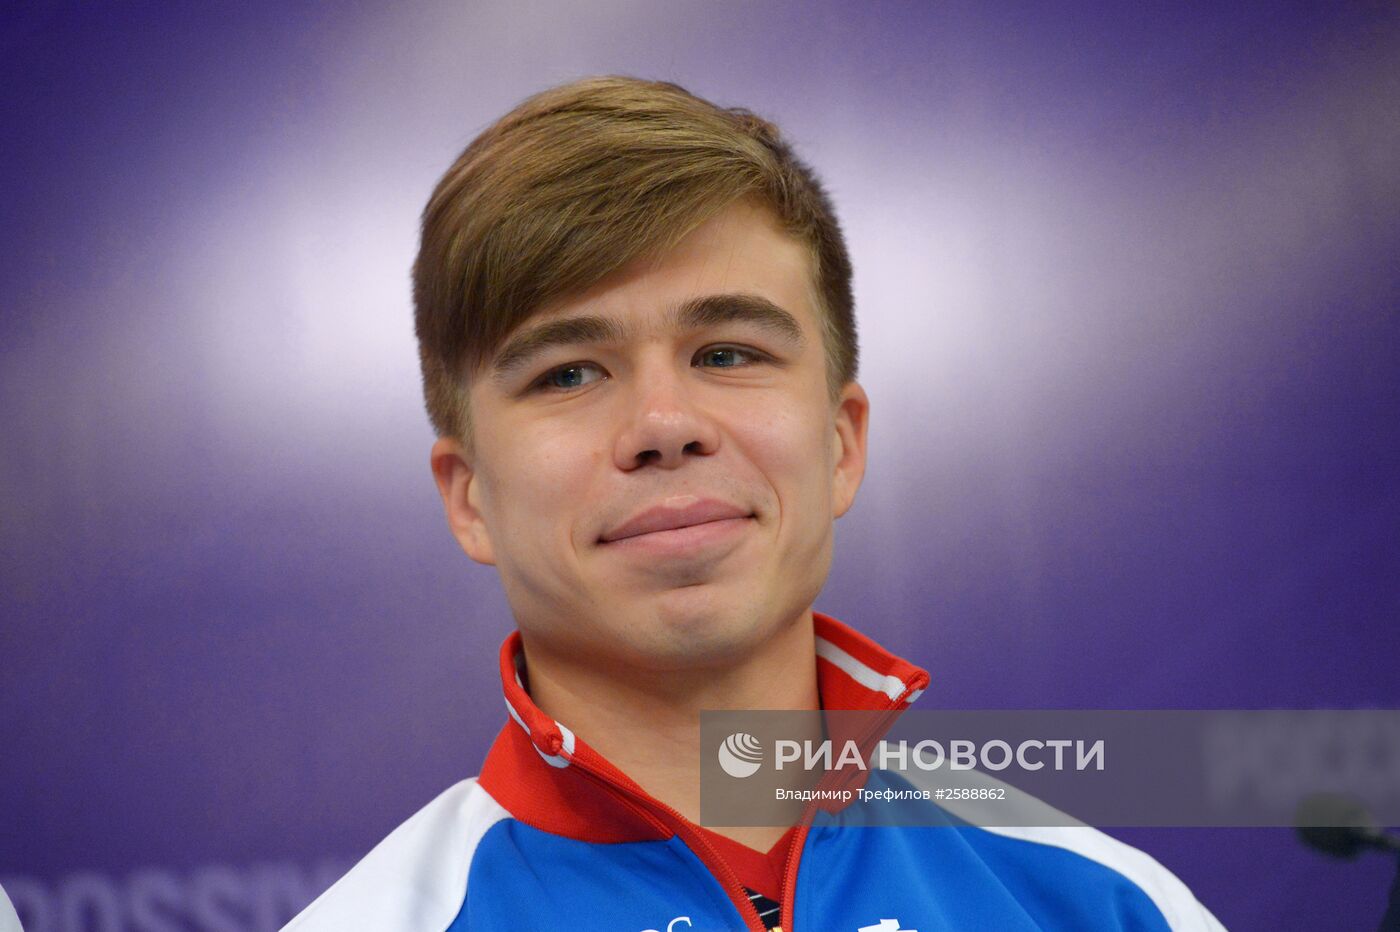 Пресс-конференция Союза конькобежцев России по итогам сезона